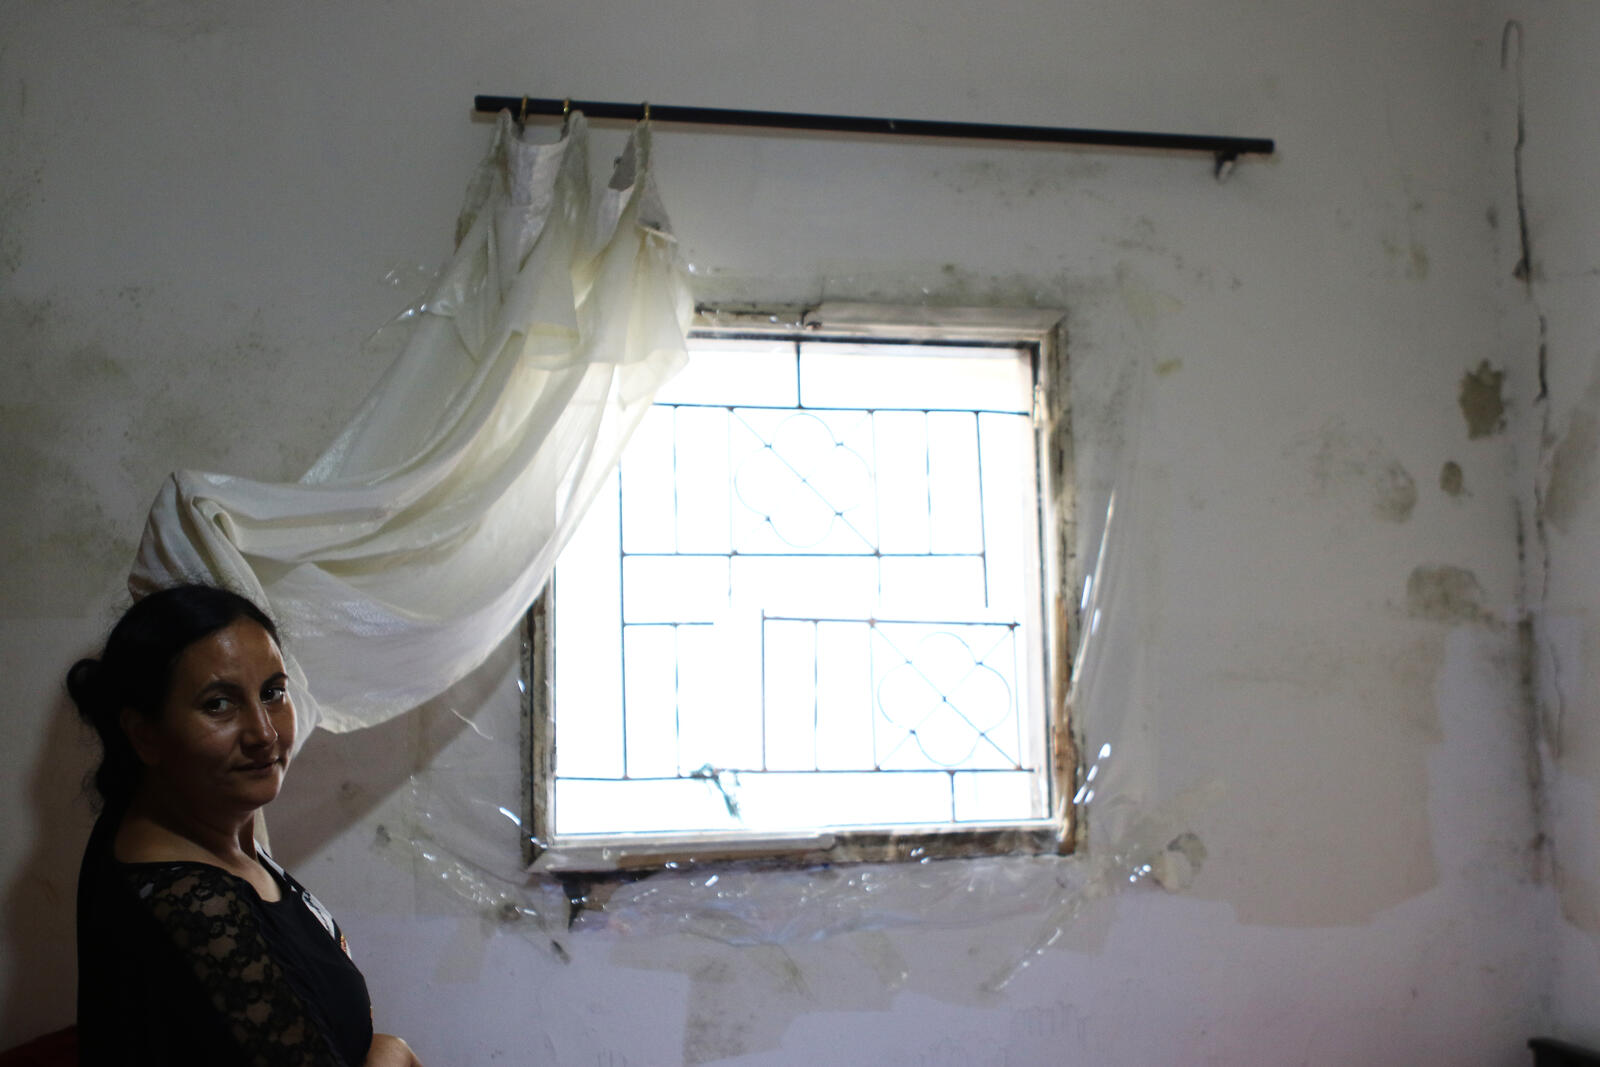 Hanaa shows the broken window in her bedroom